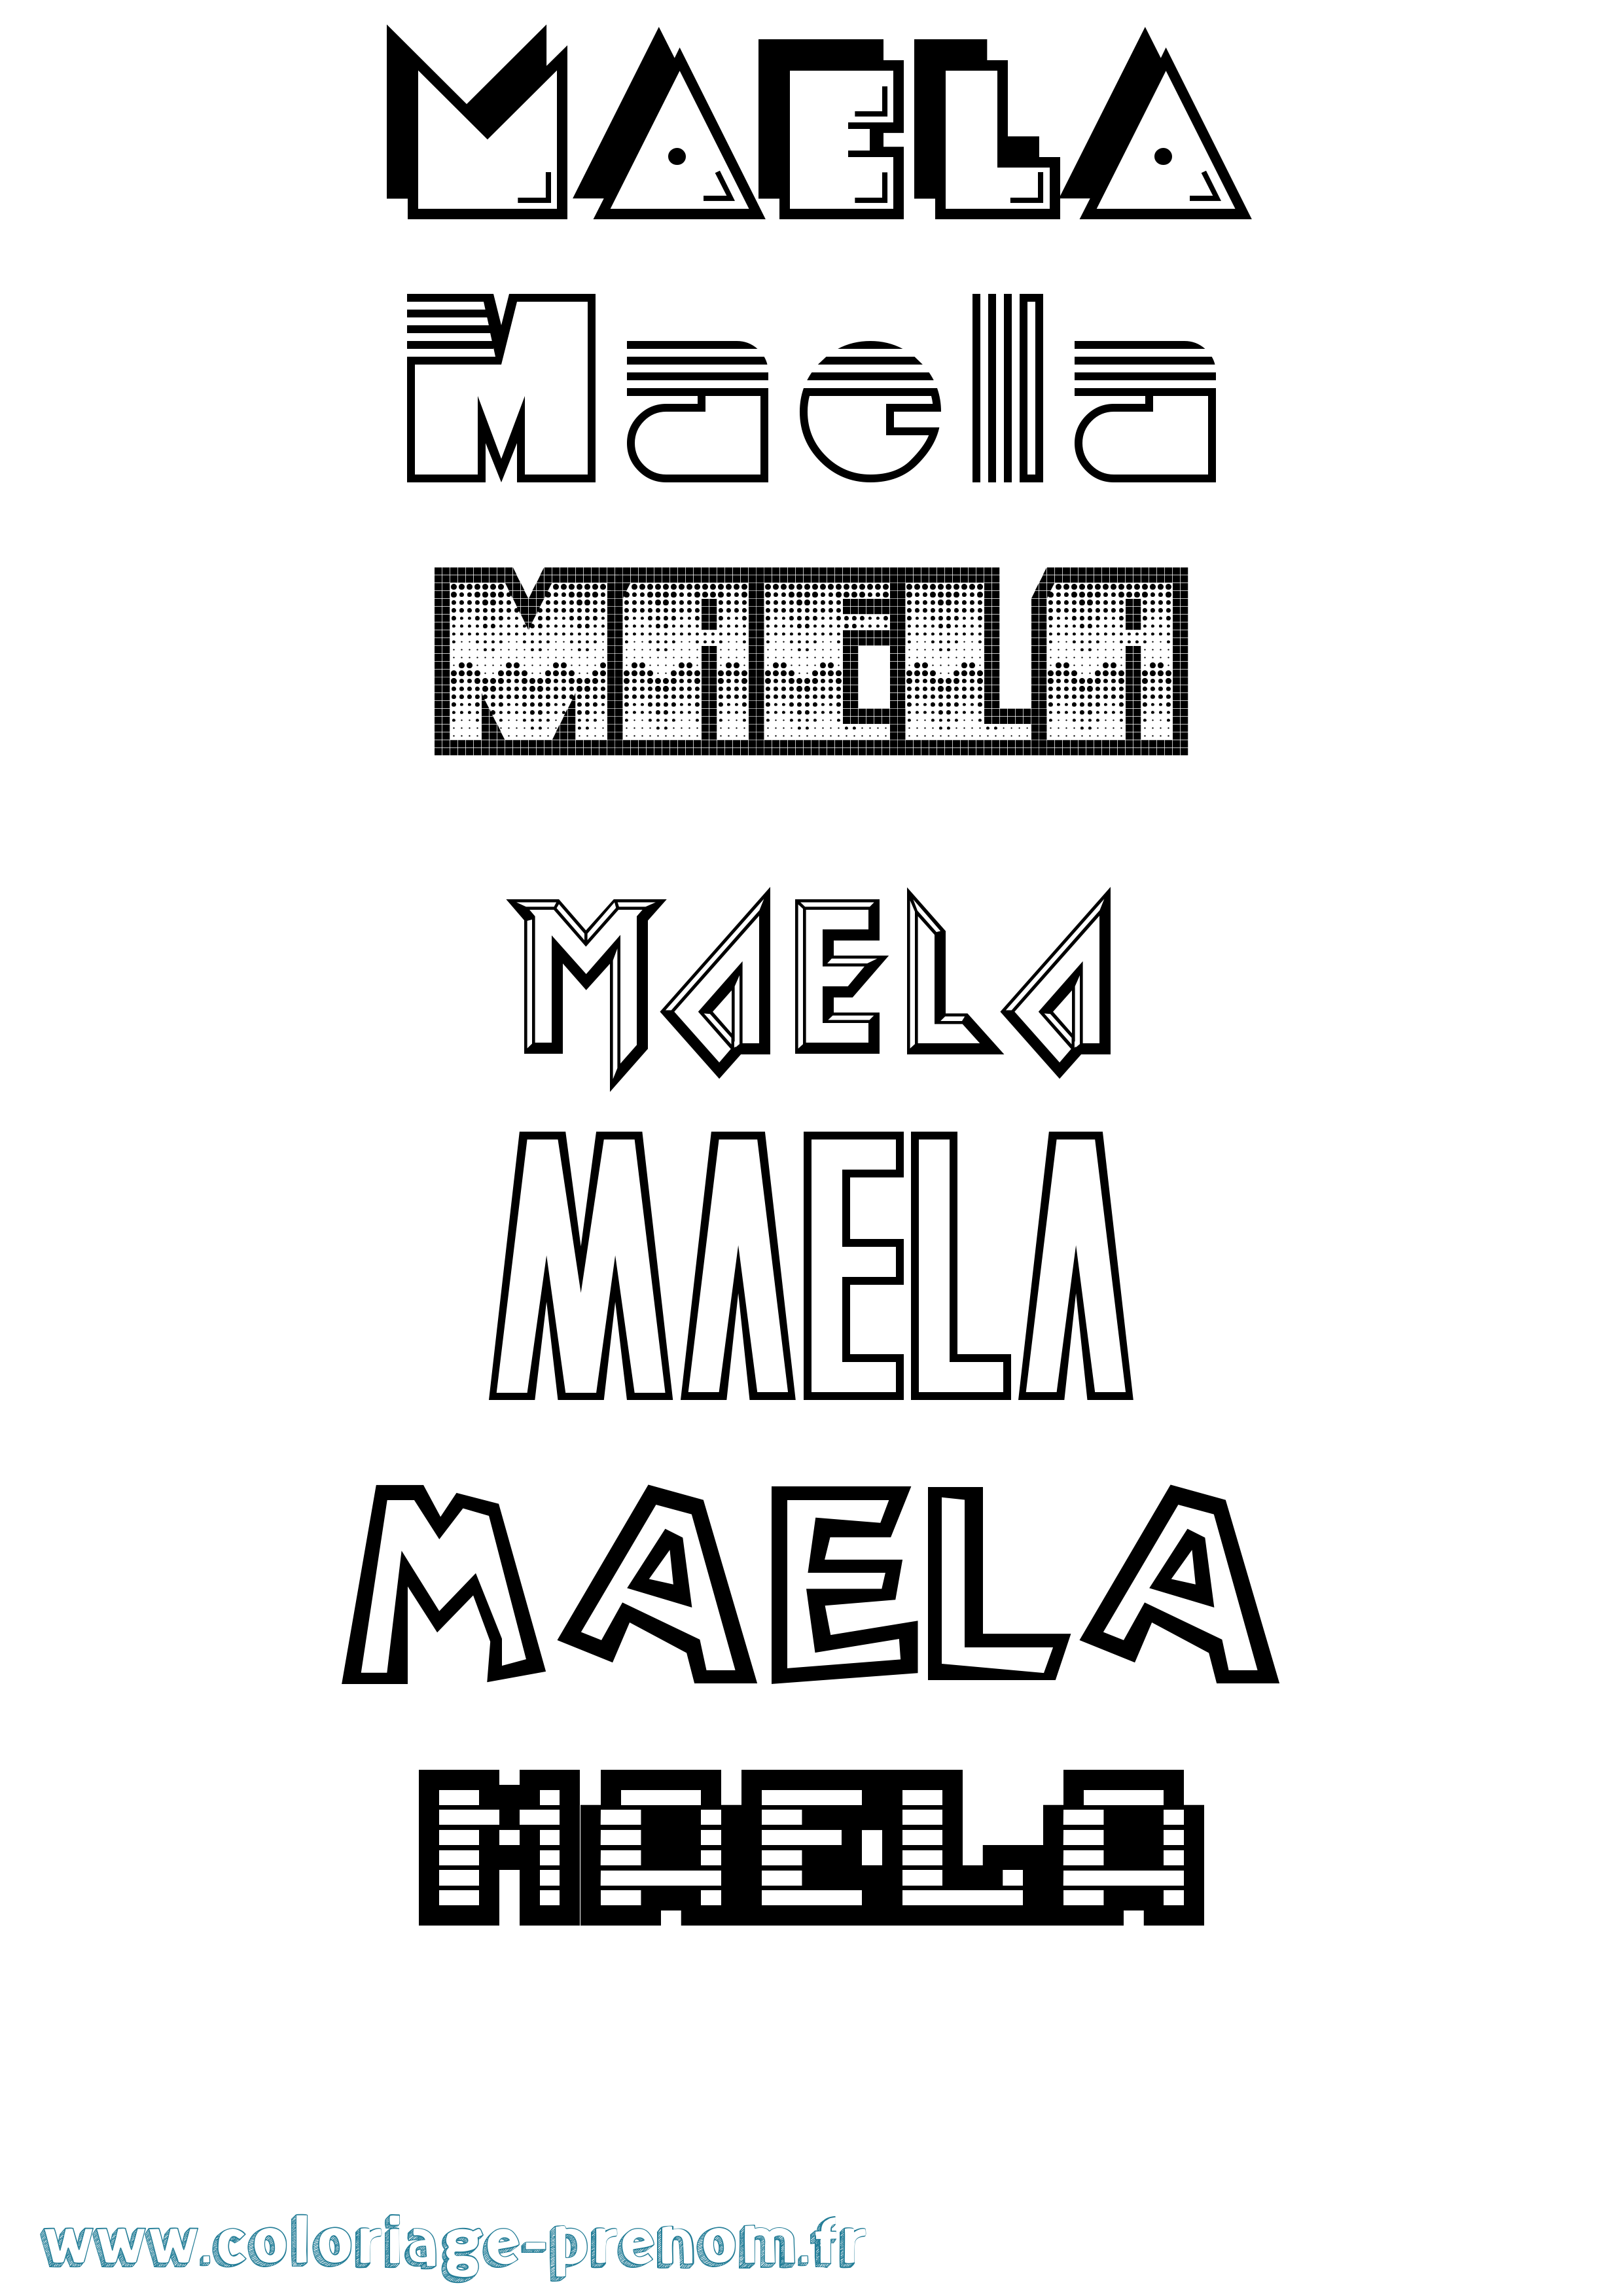 Coloriage prénom Maela Jeux Vidéos